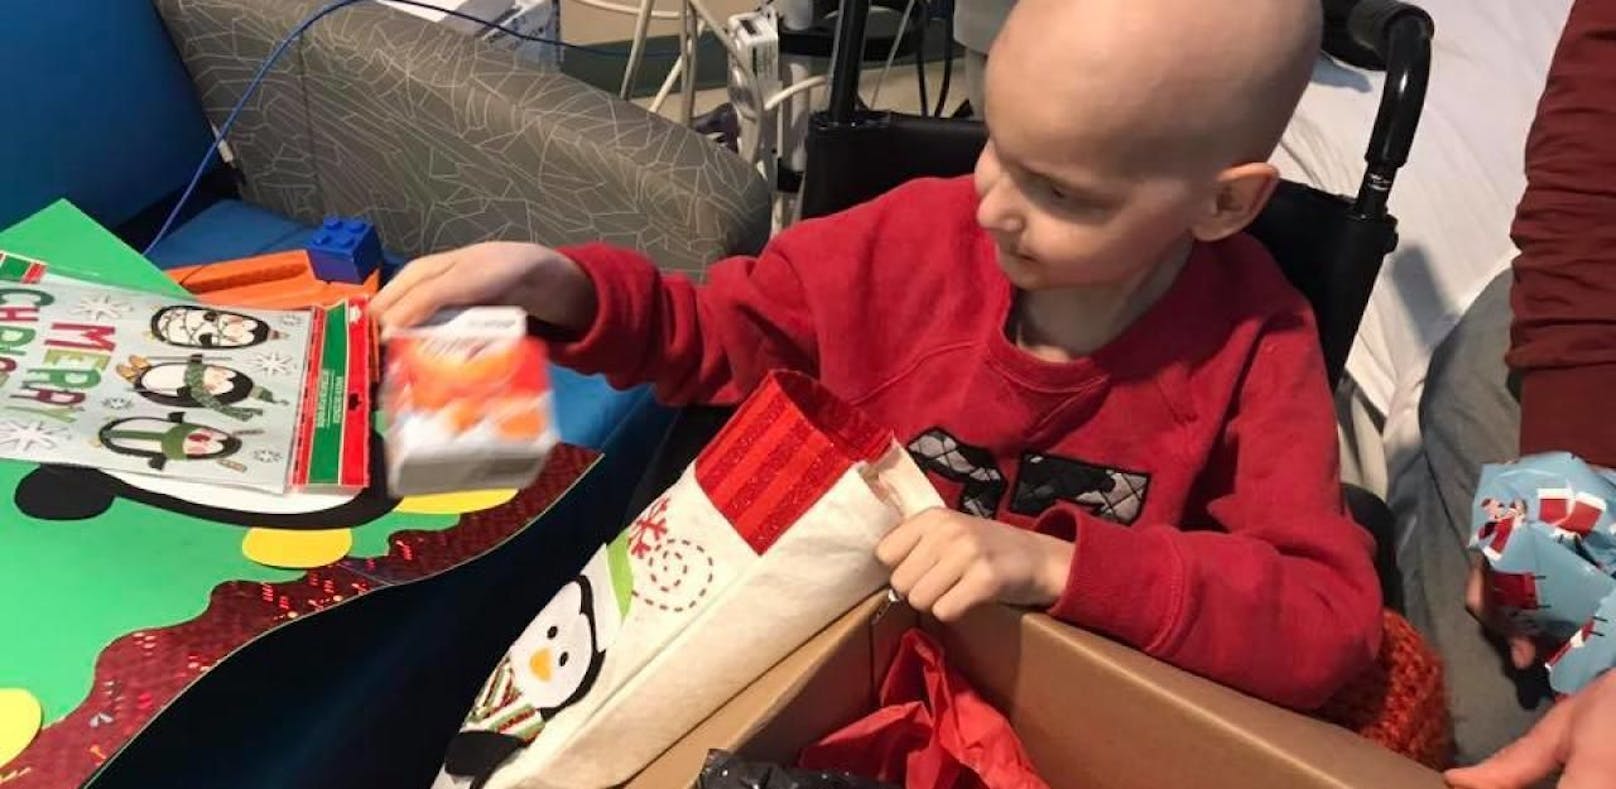 Jacob leidet an Krebs. Weil er Weihnachten liebt, haben seine Eltern eine tolle Aktion gestartet.